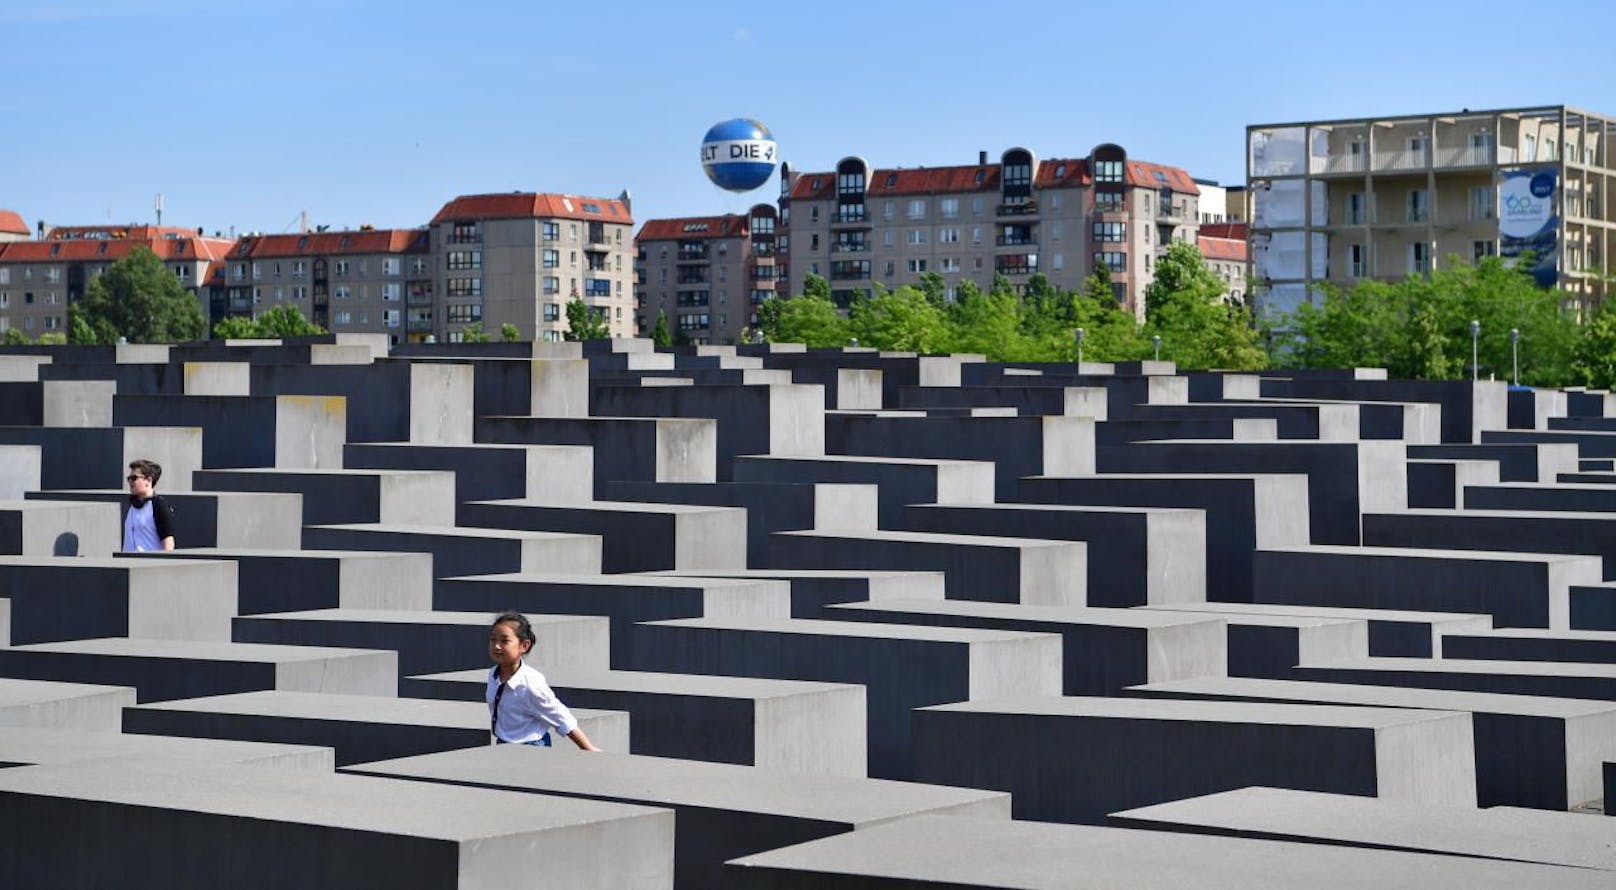 Das Denkmal für die ermordeten Juden Europas in Berlin wurde 2005 eingeweiht.